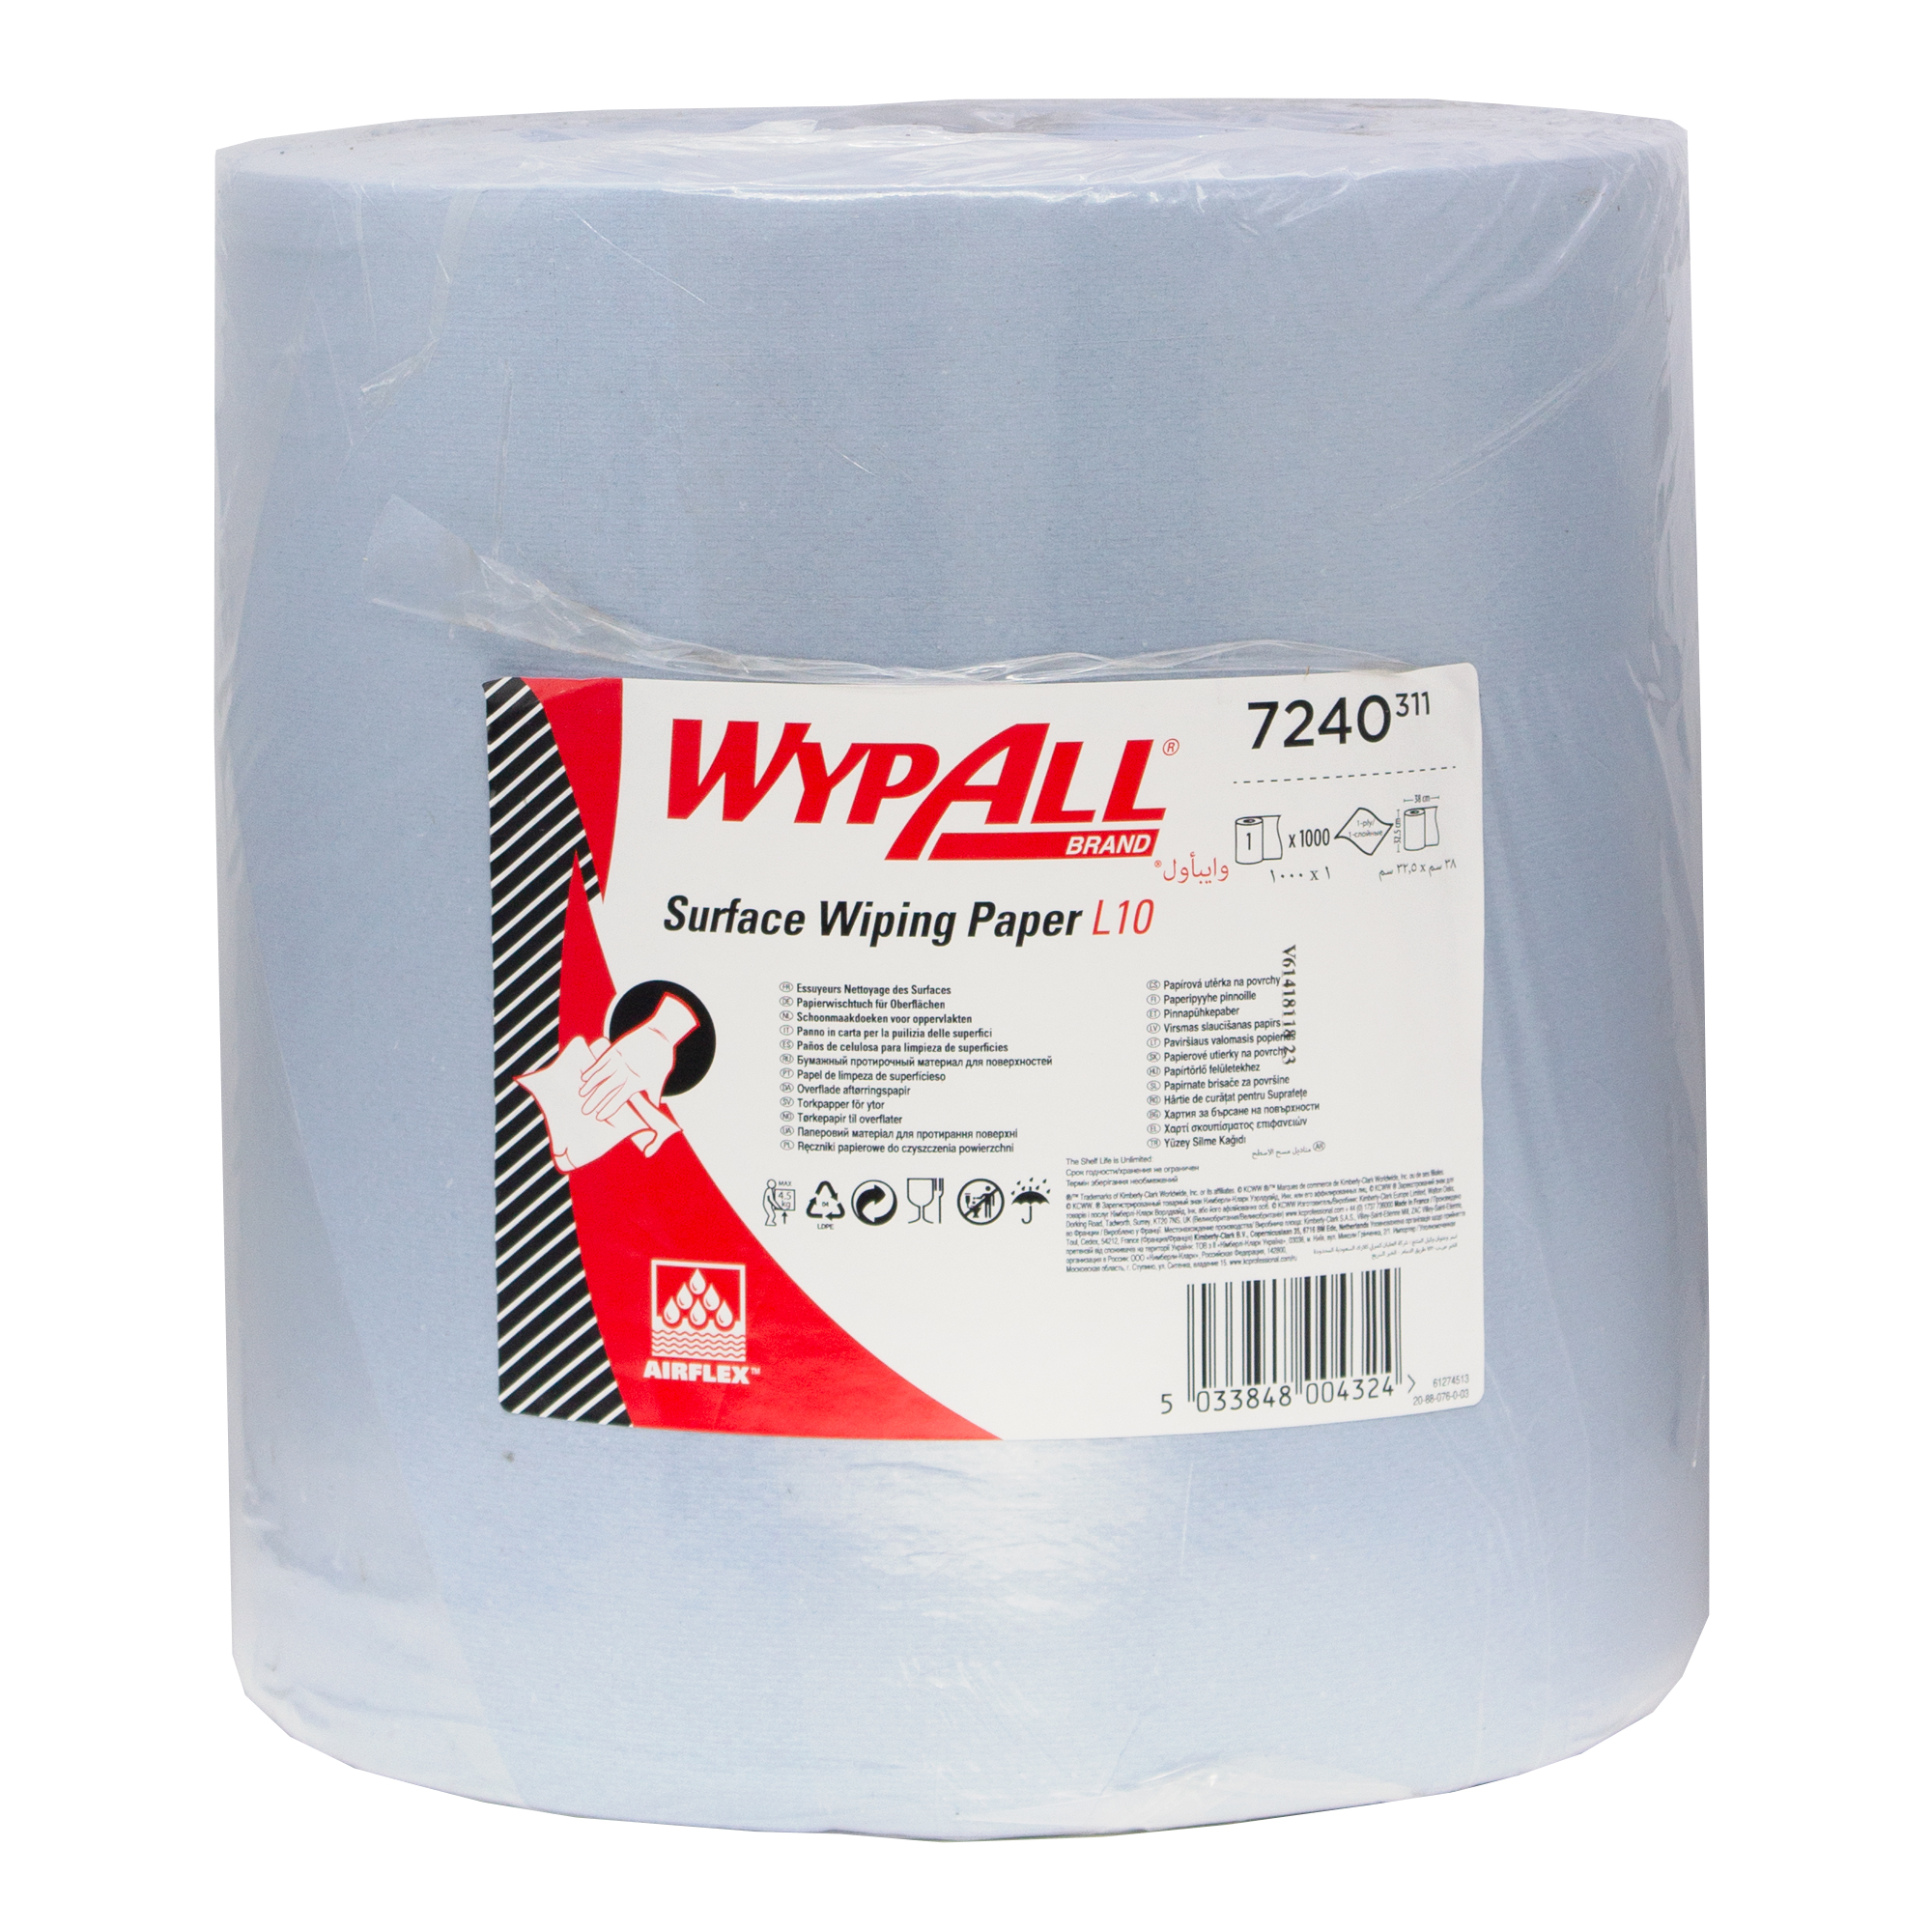 WypAll 7240 Xtra Industriewischtücher Jumbo Großrolle L10 blau 1-lagig, 33 cm breit, 1000 Tücher